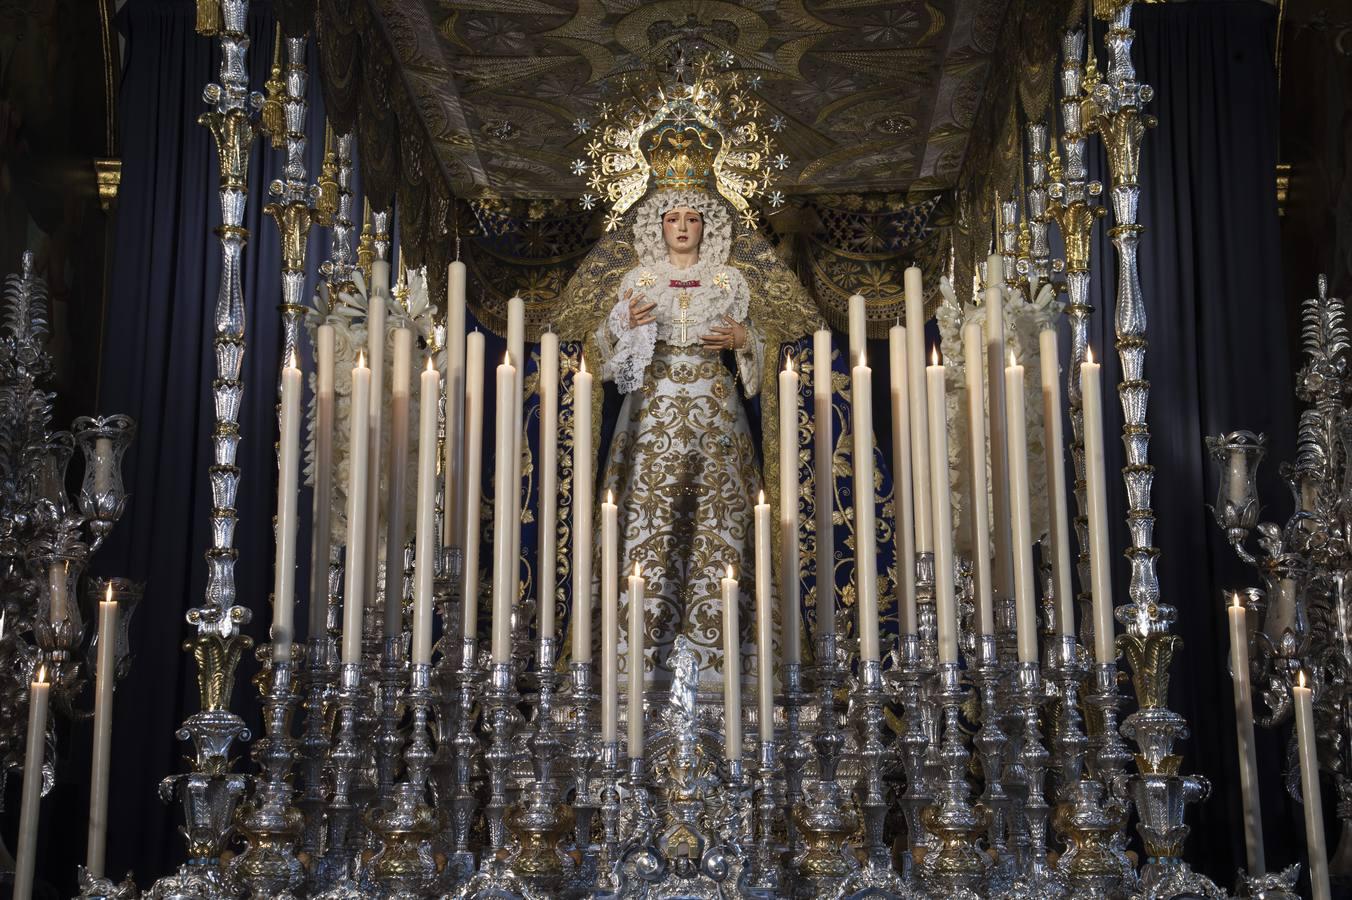 Altar del primer aniversario de la coronación de la Virgen de los Negritos